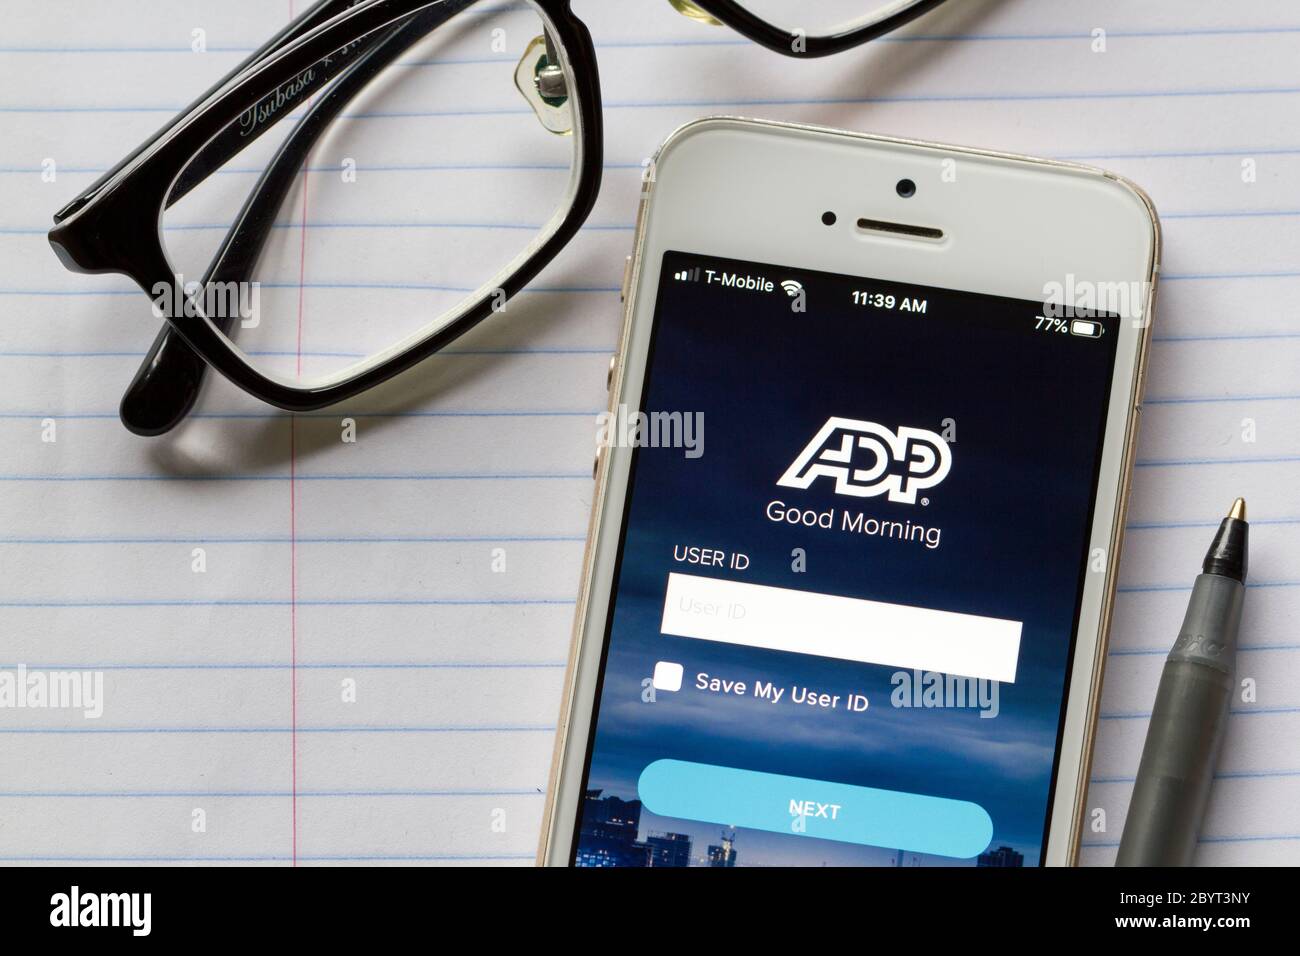 La schermata di accesso dell'app ADP viene visualizzata su un iPhone. Automatic Data Processing Inc. È un fornitore americano di software e servizi di gestione delle risorse umane. Foto Stock